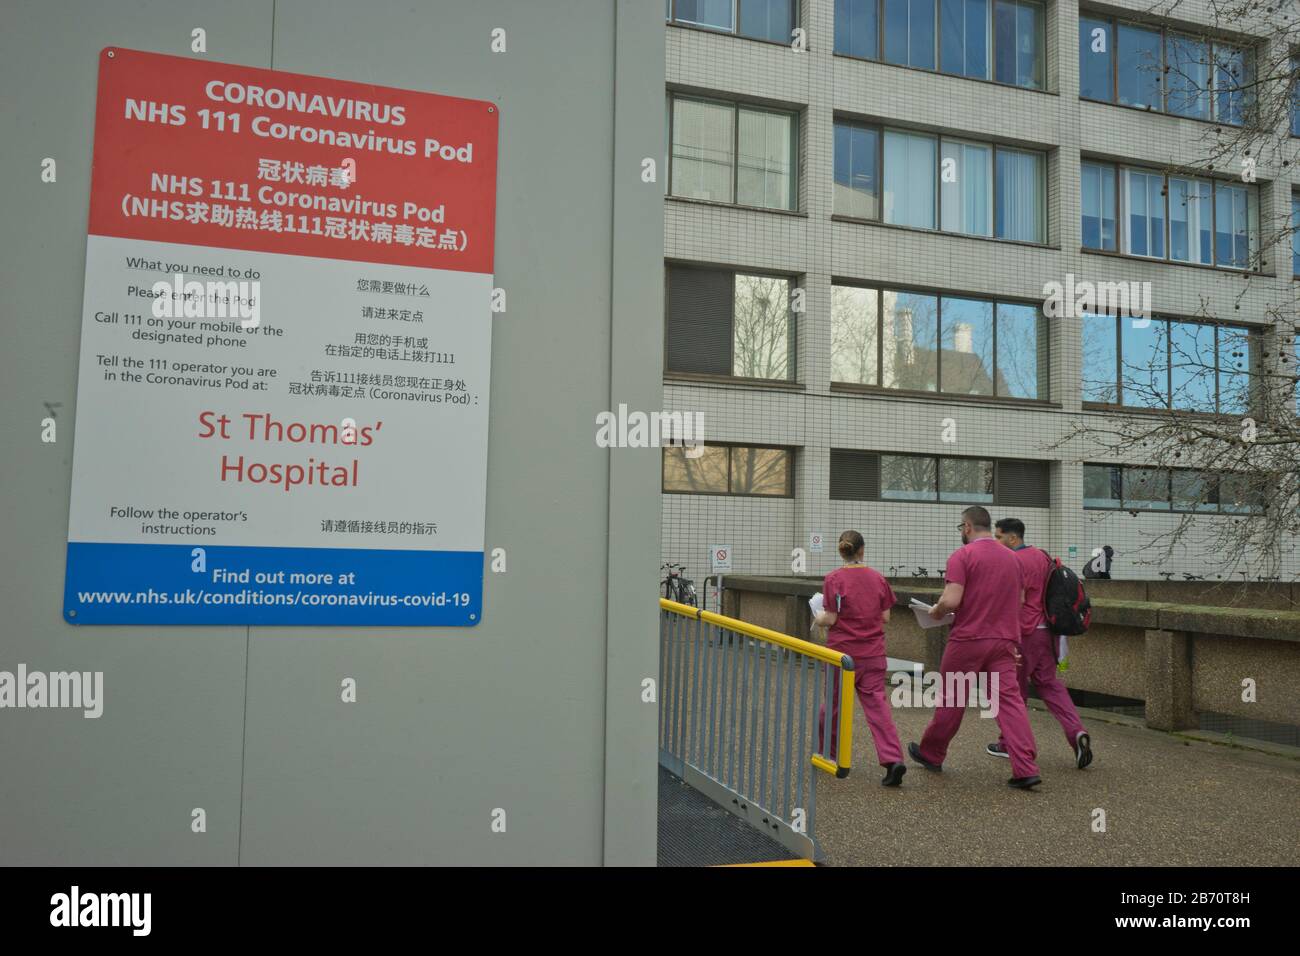 Le personnel médical passe devant la dosette NHS Coronavirus à l'hôpital St. Thomas de Londres, Angleterre, Royaume-Uni Banque D'Images